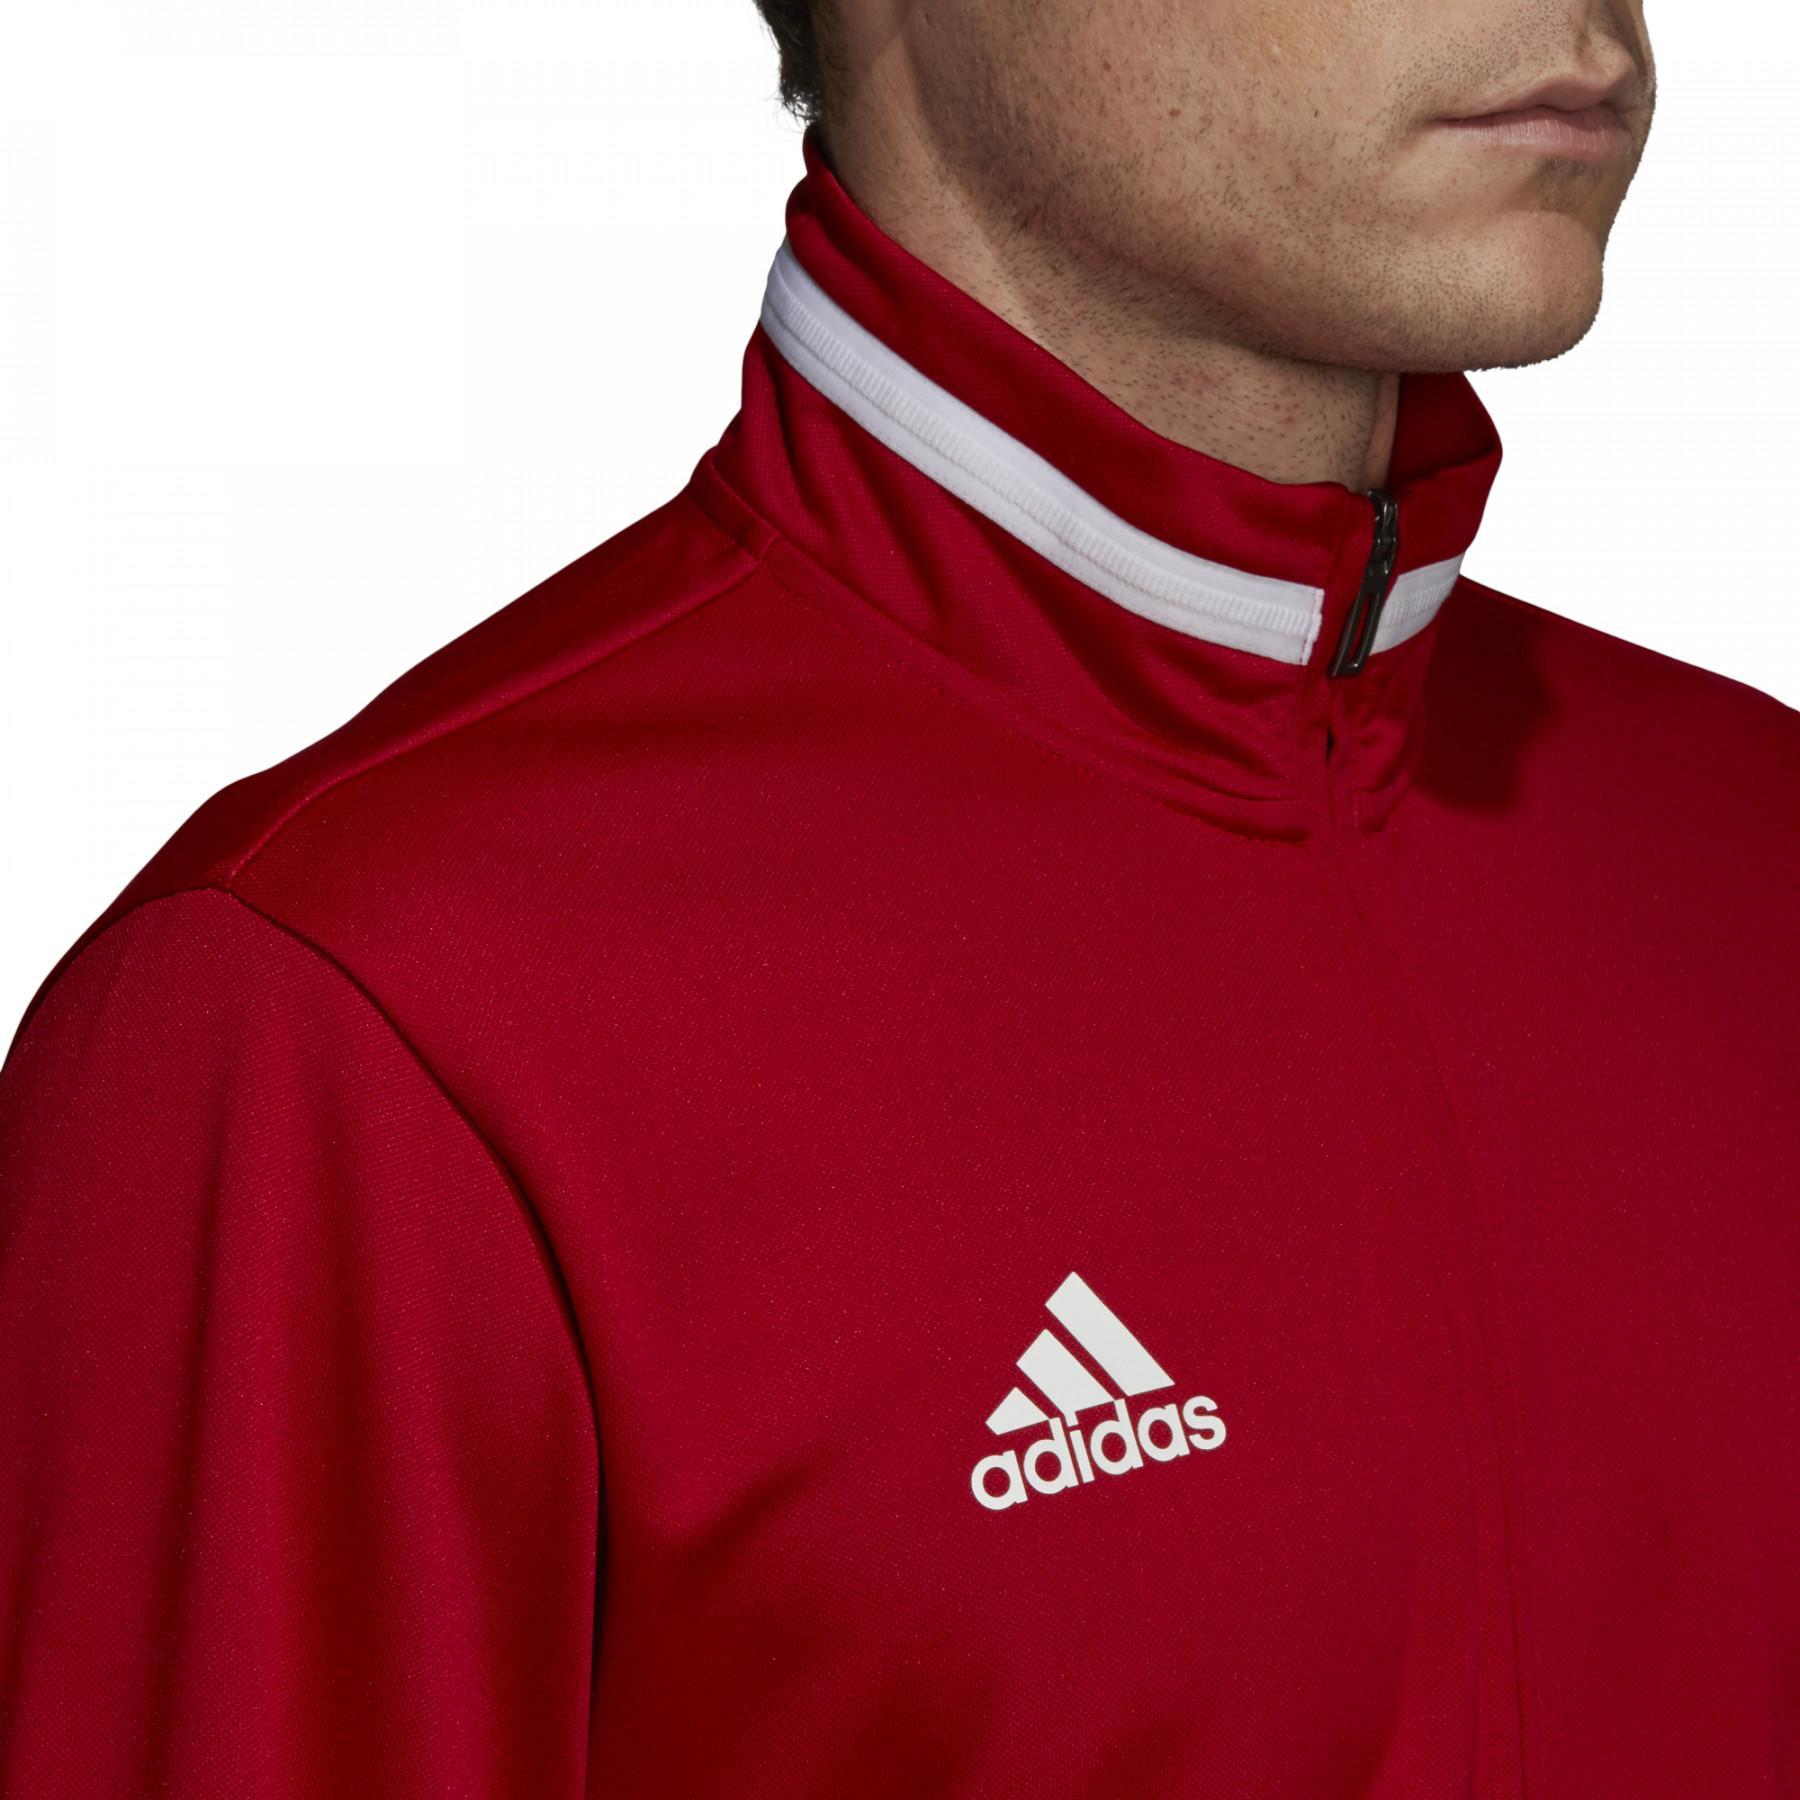 Sweat jacket adidas Team 19